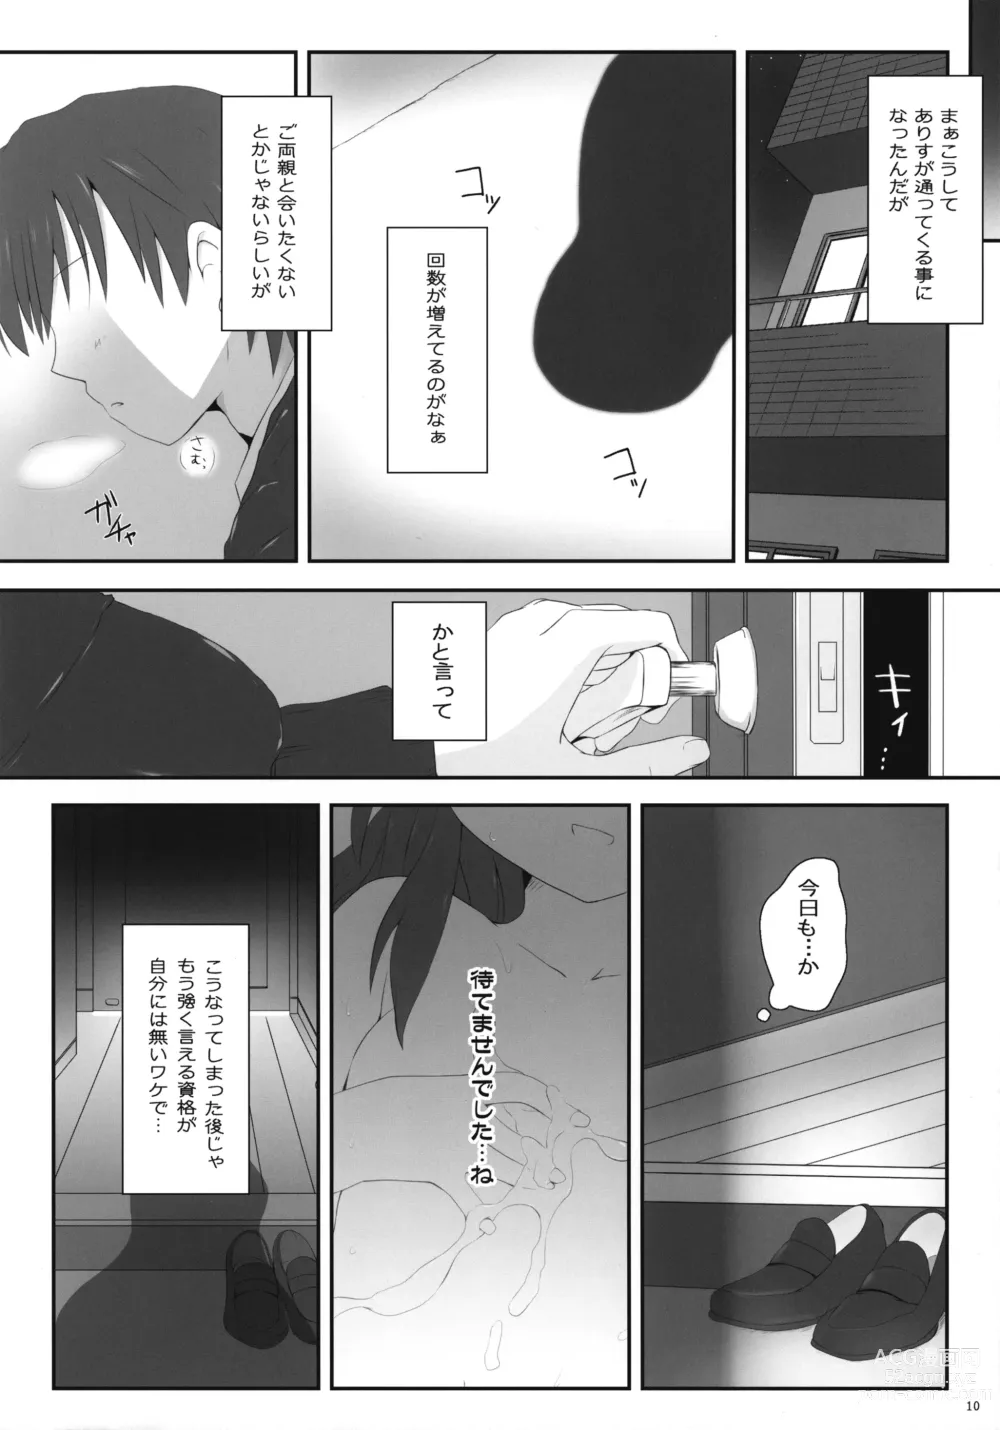 Page 10 of doujinshi Arisu Ecchi